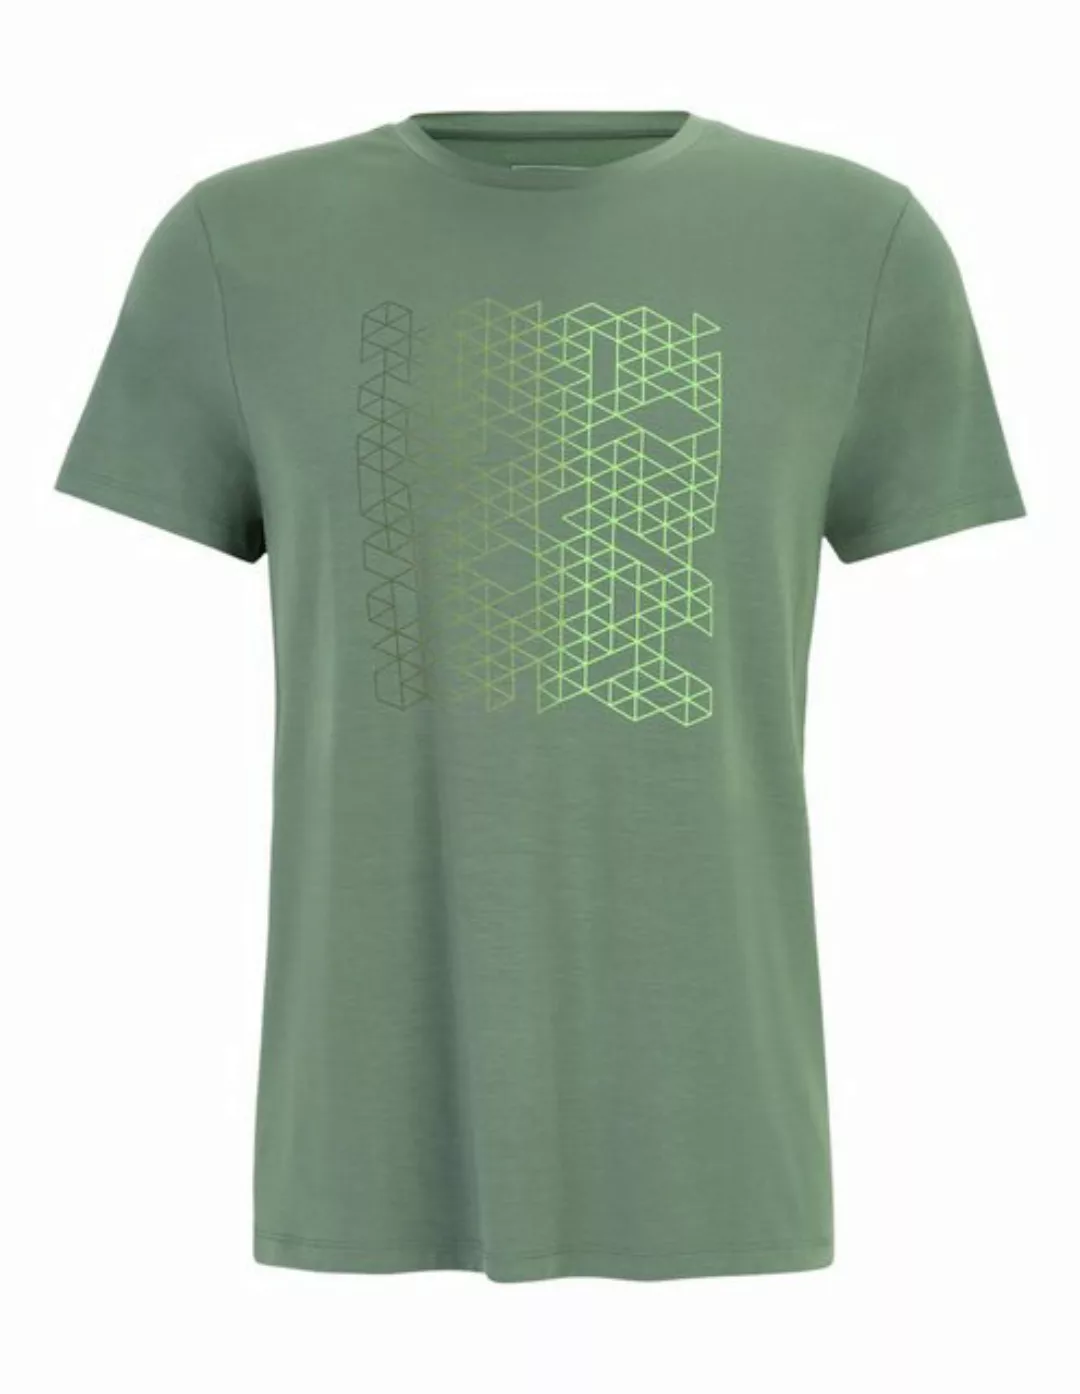 HOT Sportswear T-Shirt Rundhalsshirt Holen günstig online kaufen